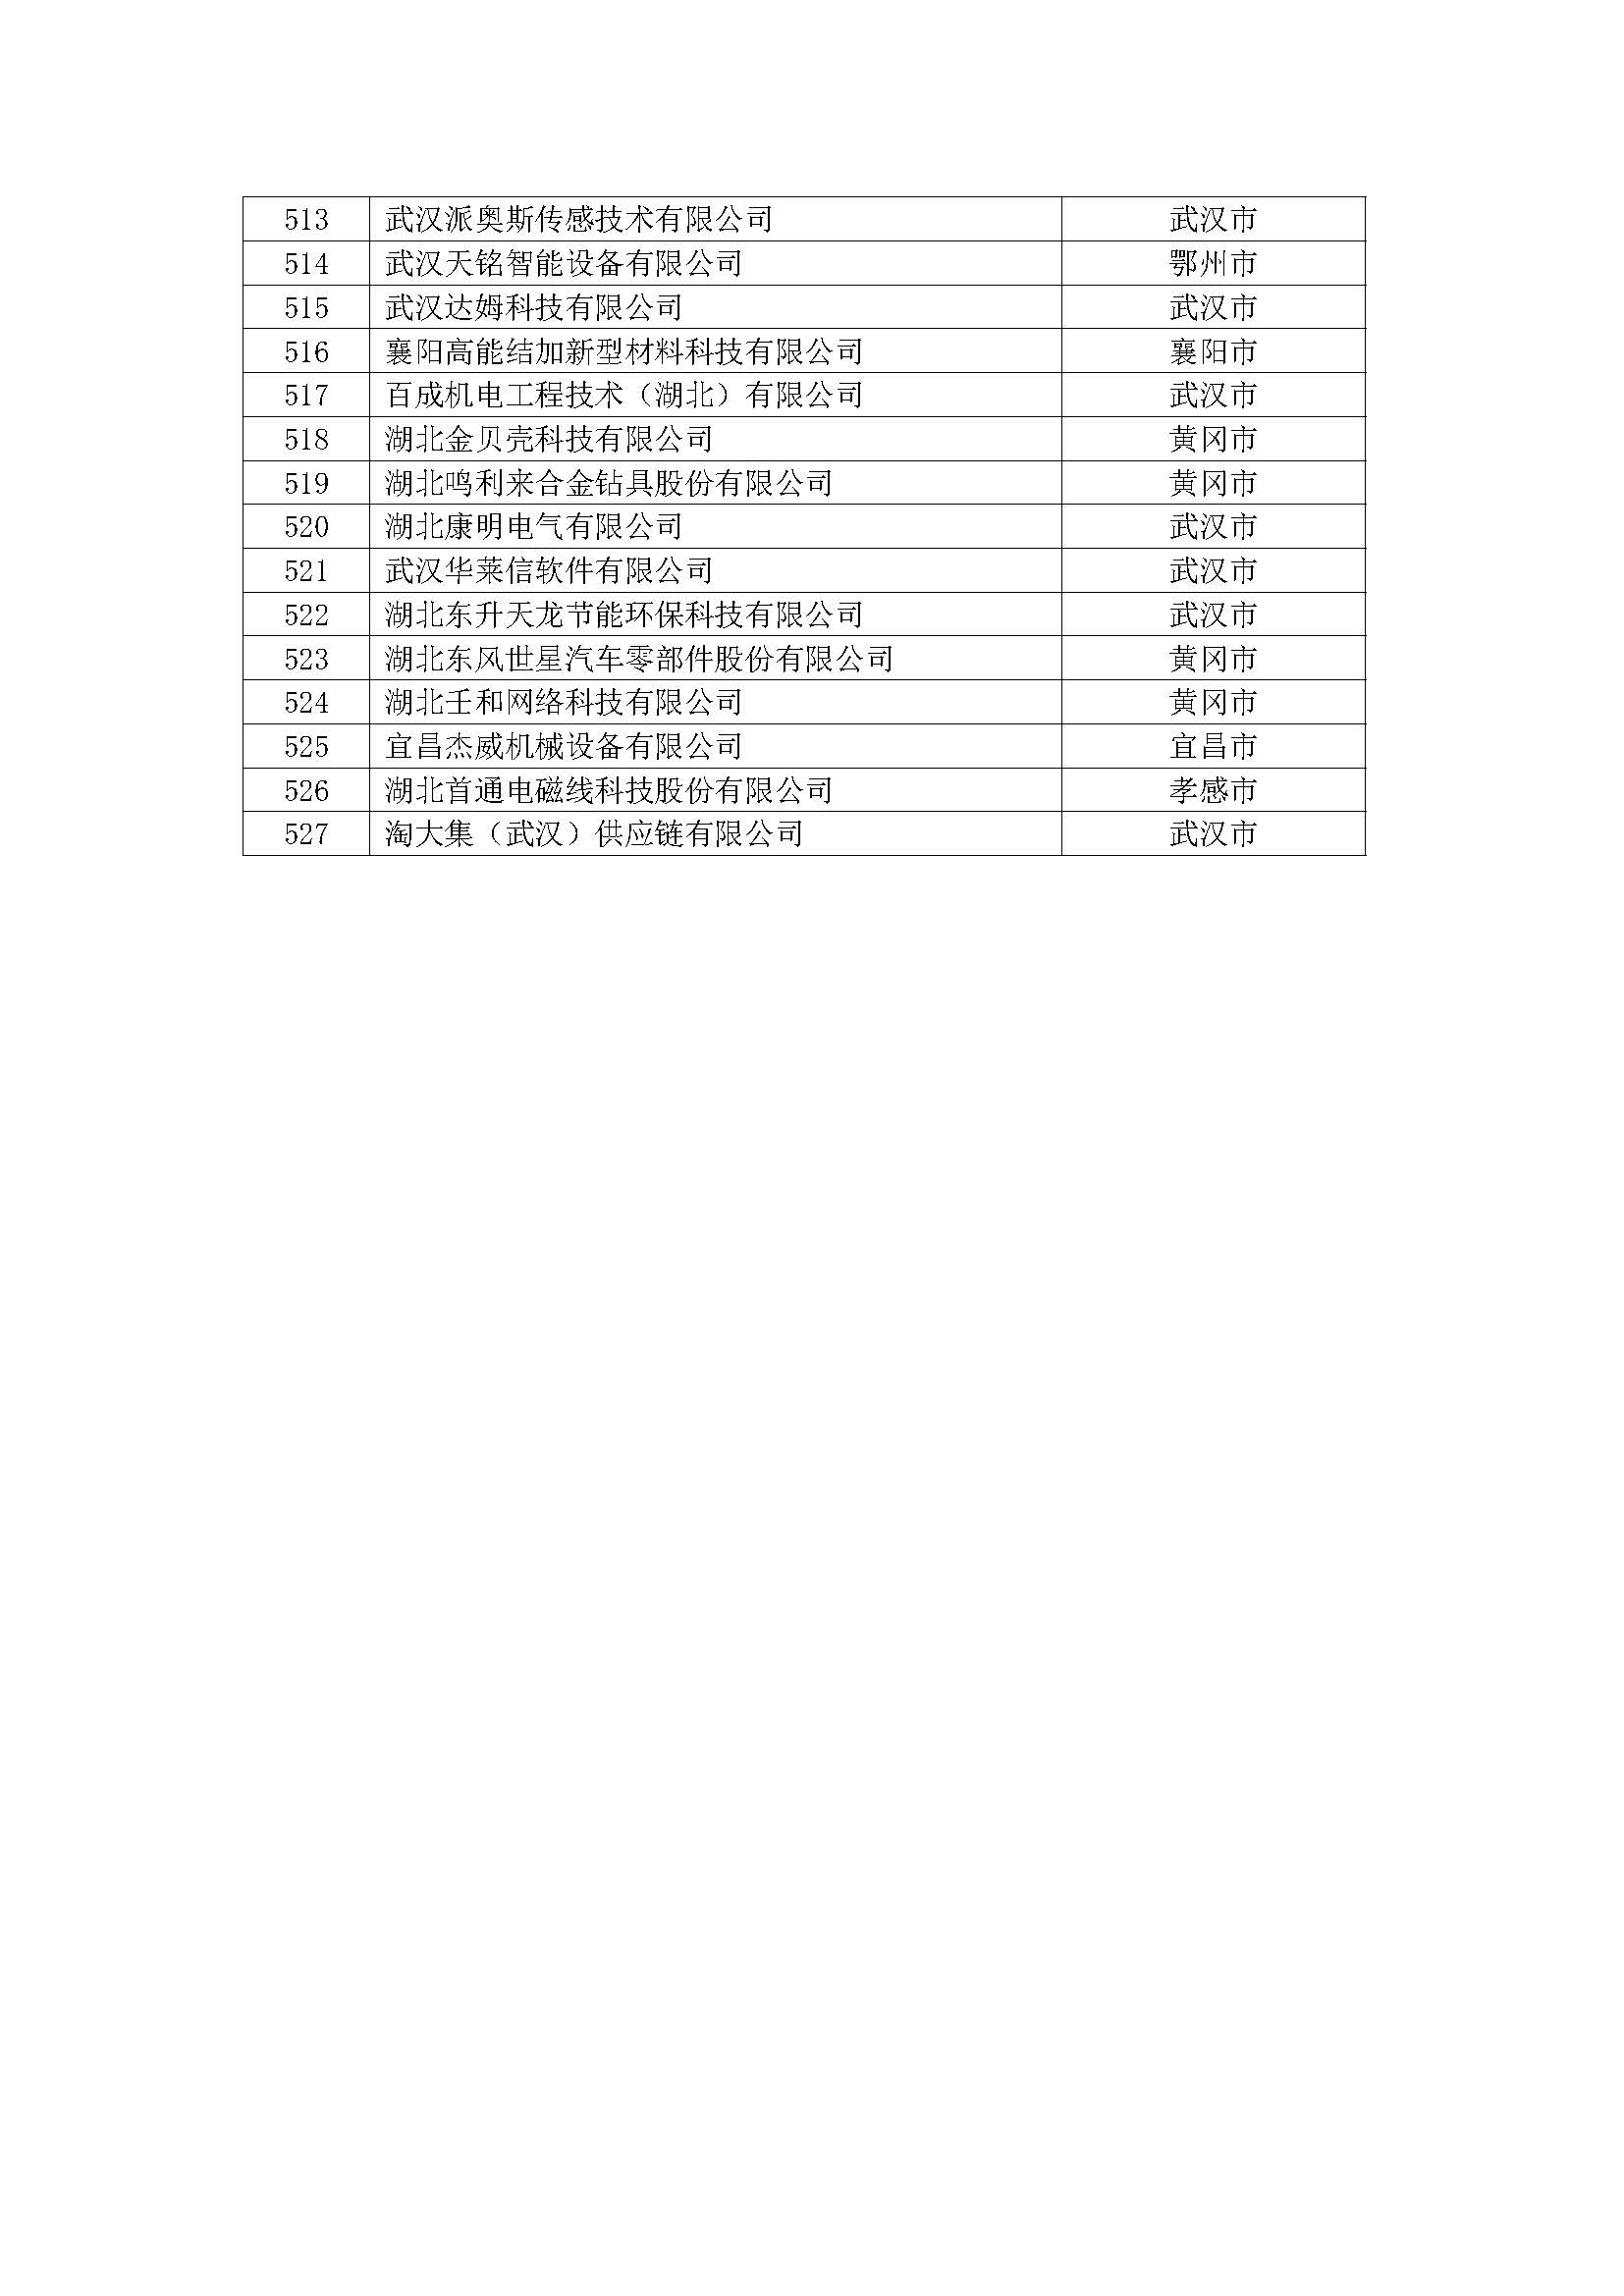 第一批拟入库湖北省科创“新物种”企业名单_页面_14.jpg